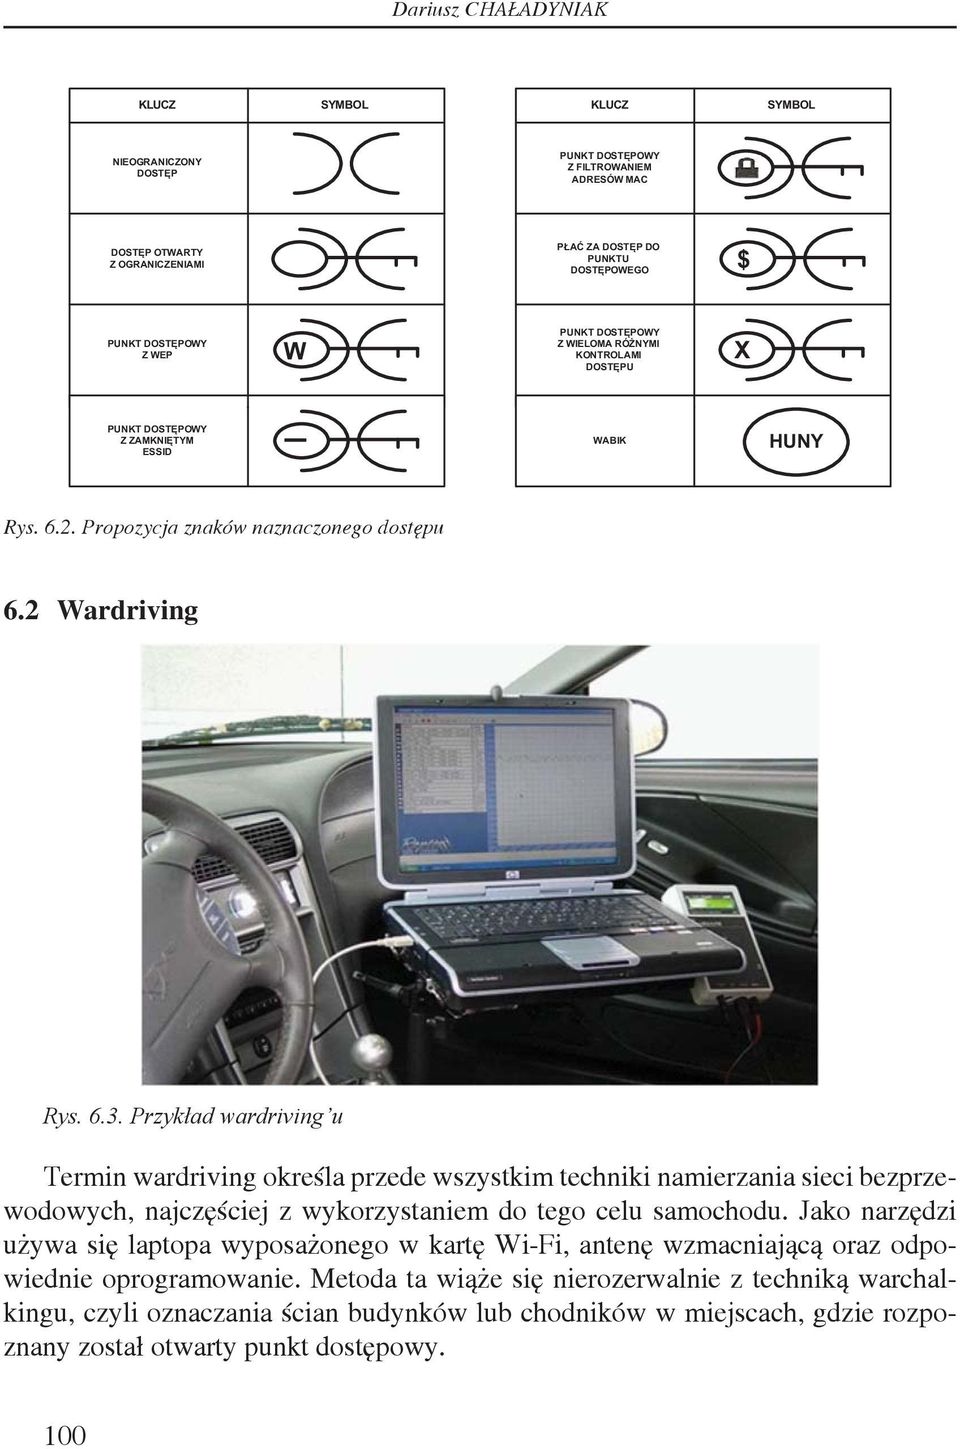 Przykład wardriving u Termin wardriving określa przede wszystkim techniki namierzania sieci bezprzewodowych, najczęściej z wykorzystaniem do tego celu samochodu.